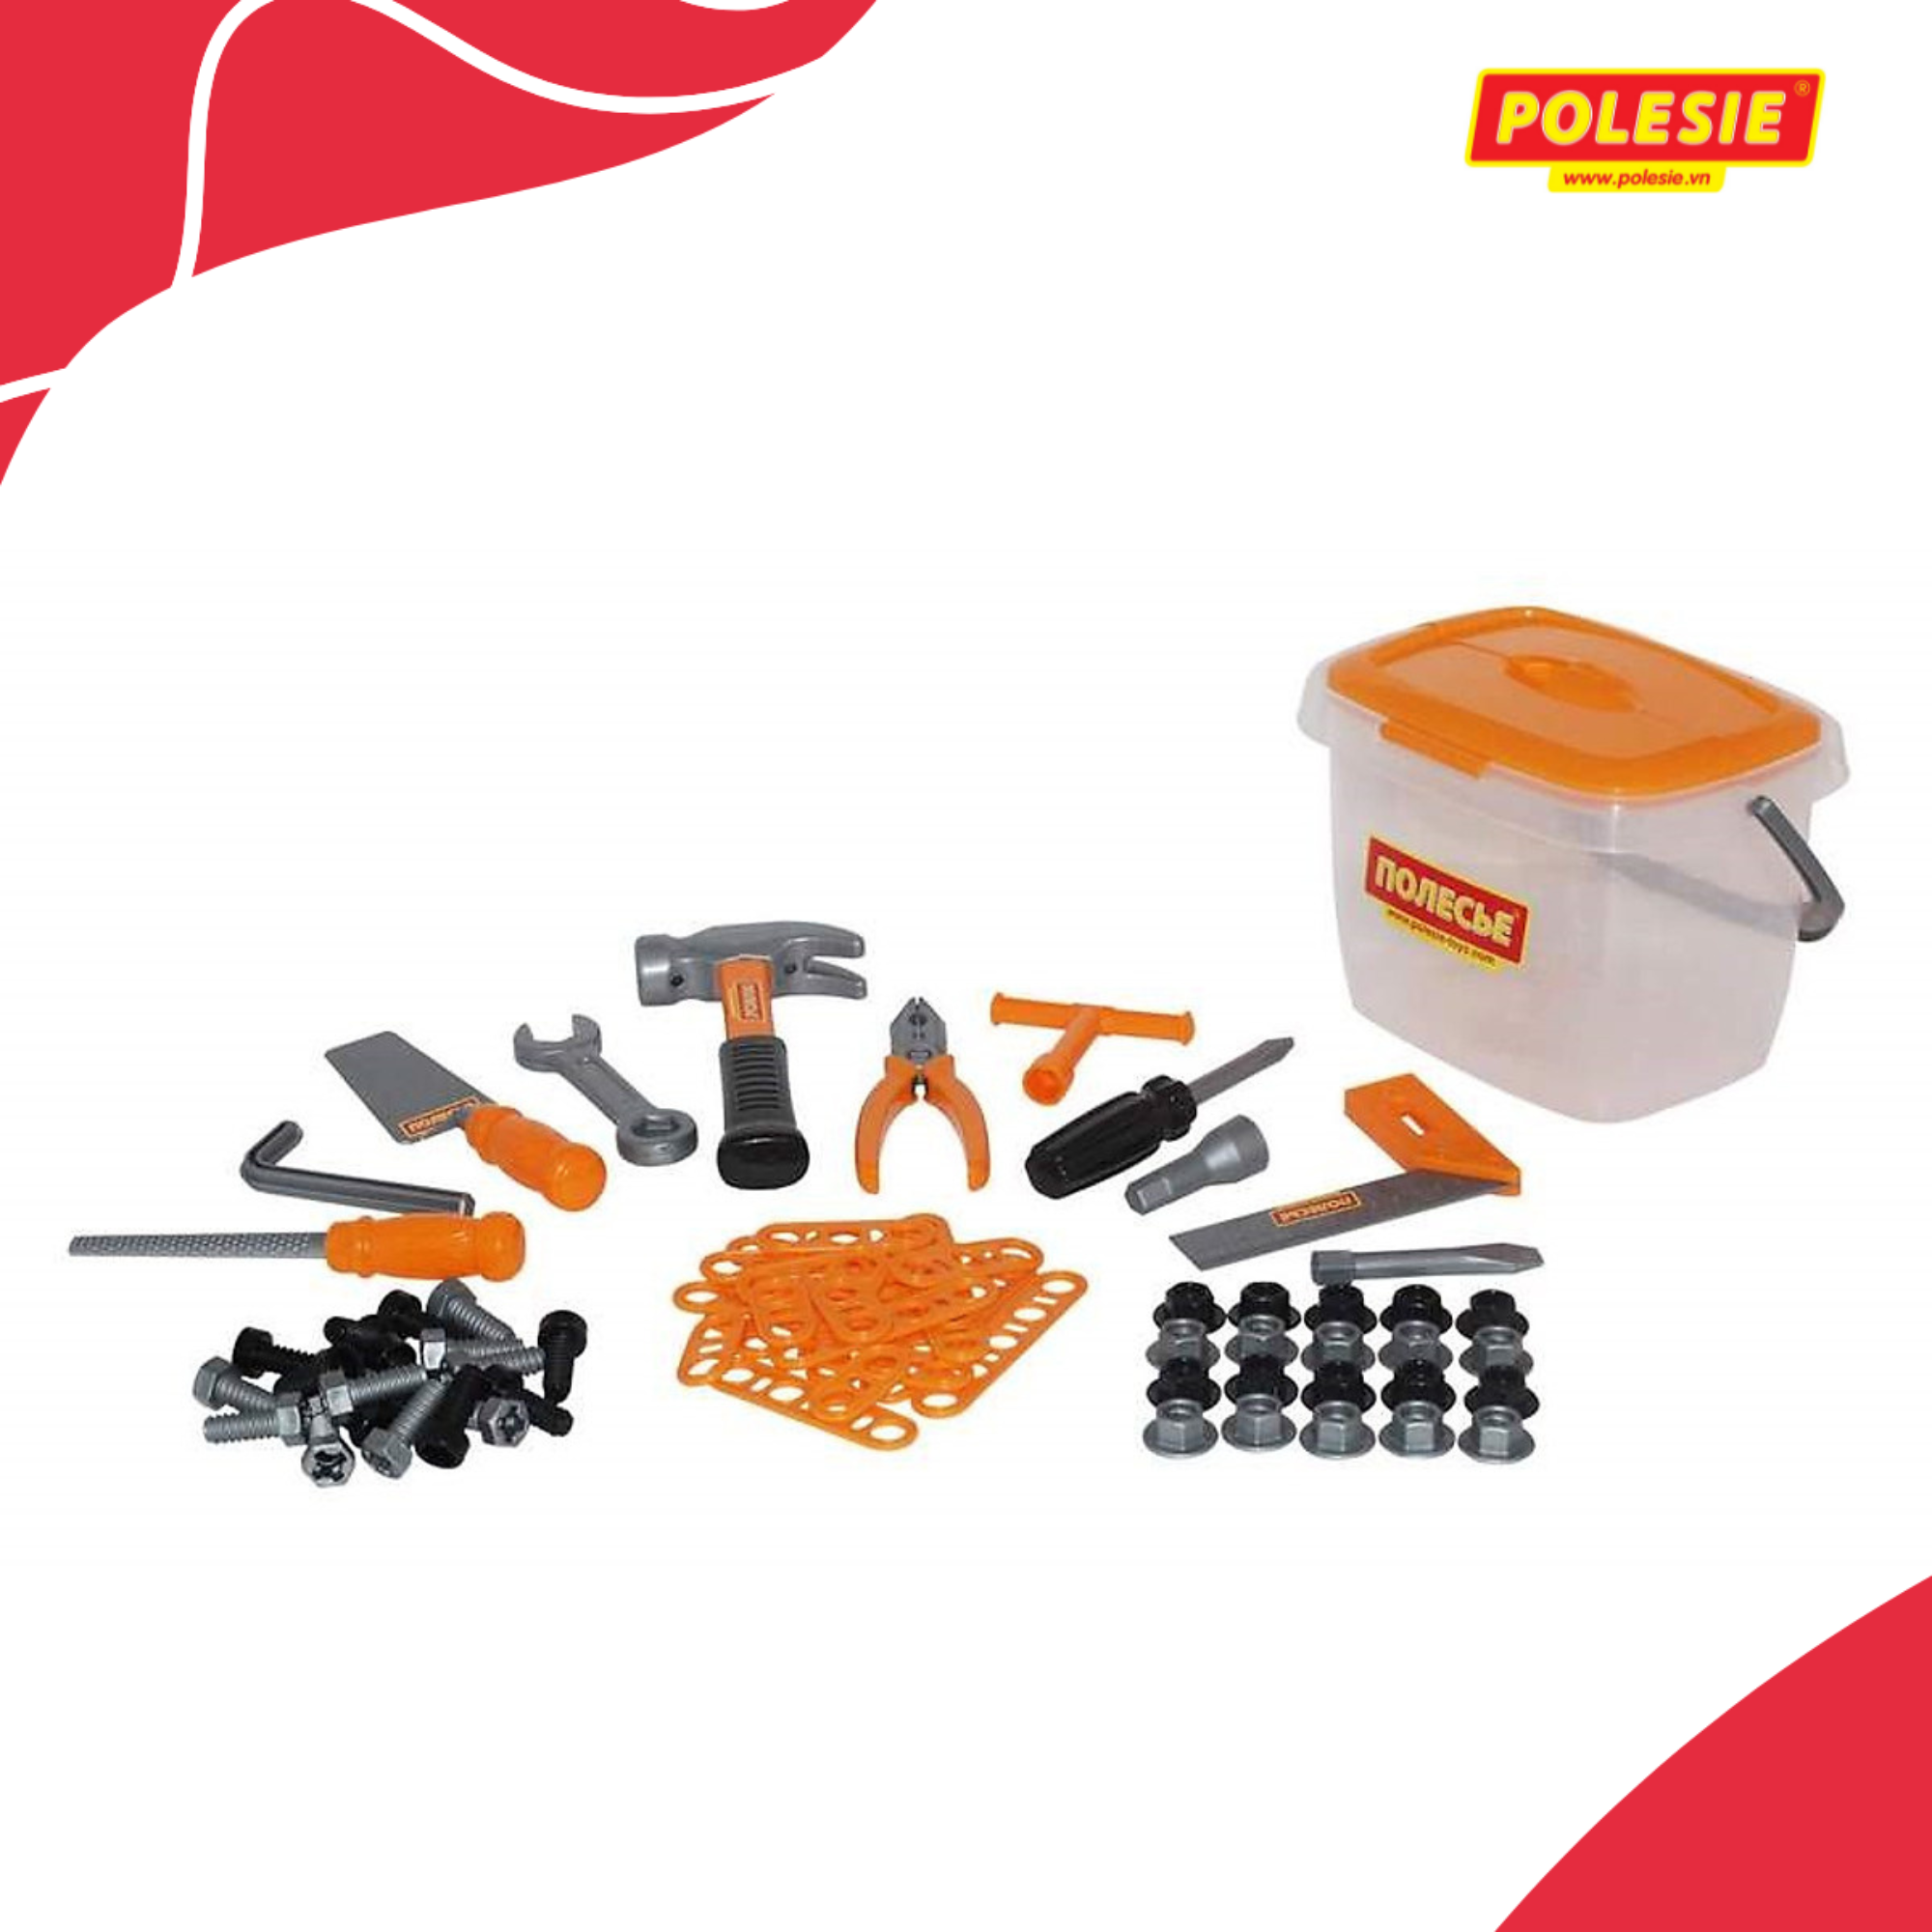 Hộp đồ chơi dụng cụ kỹ thuật 72 chi tiết - Polesie Toys